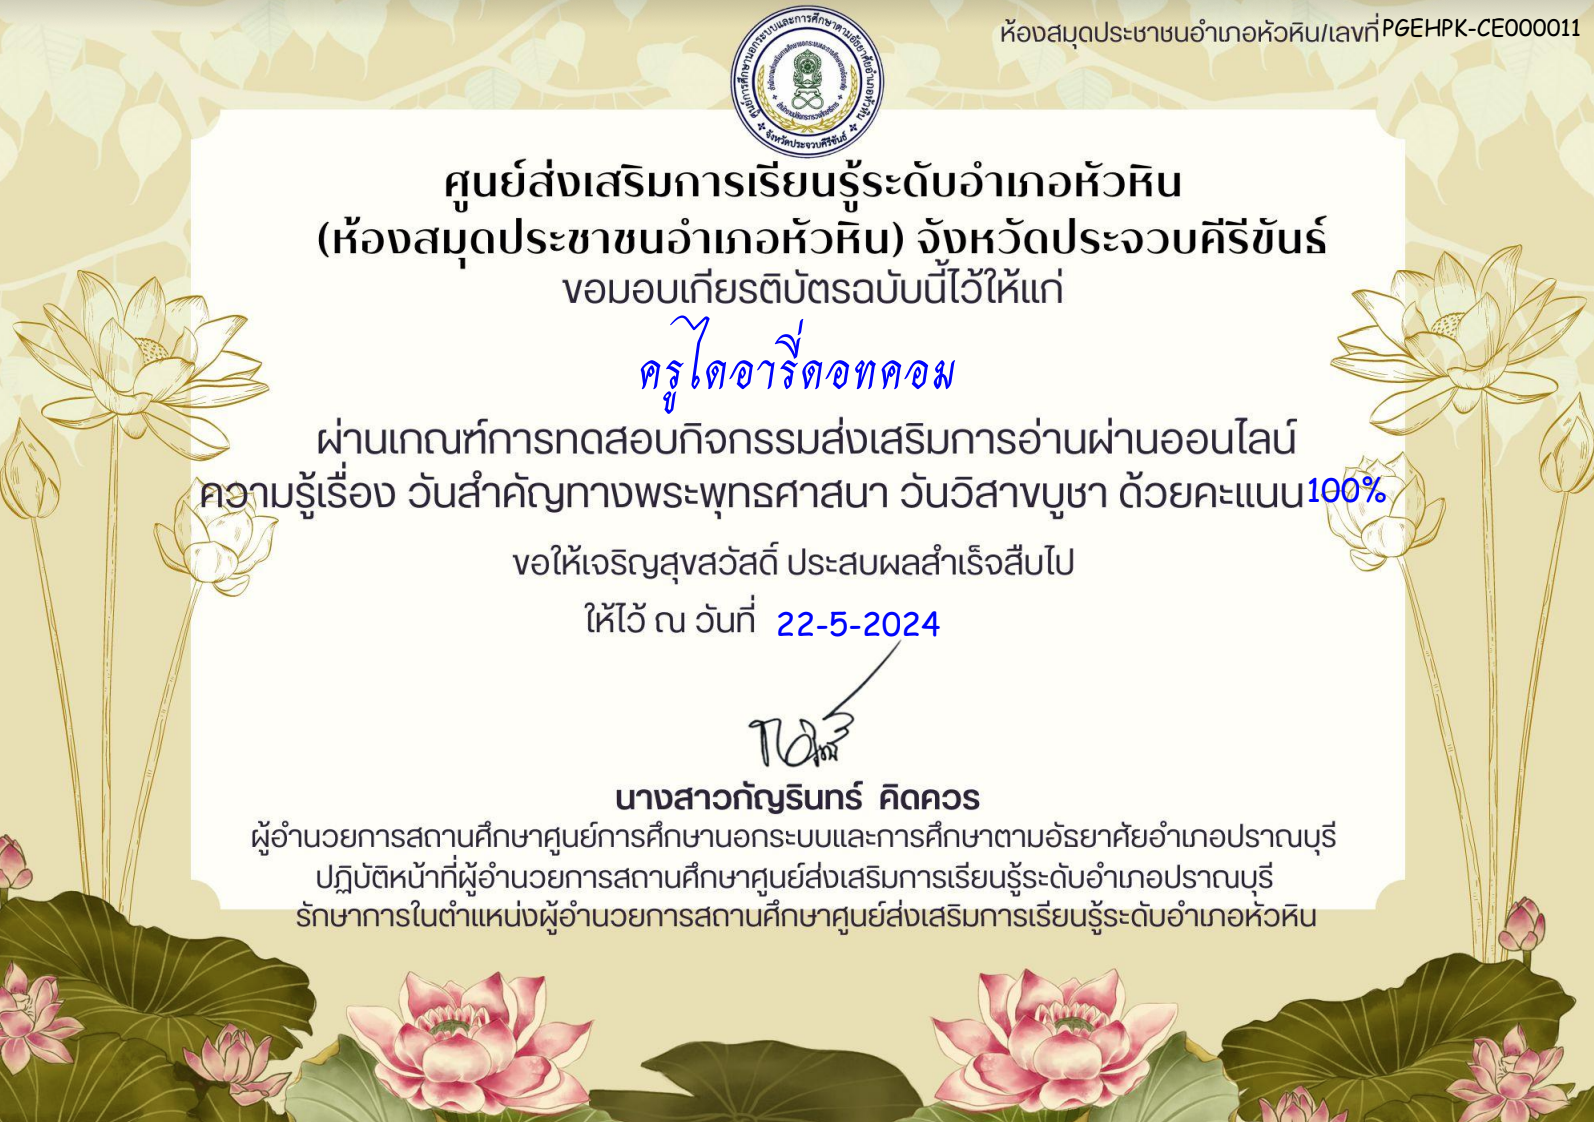 แบบทดสอบออนไลน์ เรื่องวันสำคัญของไทย วันวิสาขบูชา ผ่านเกณฑ์ 60 % จะได้รับเกียรติบัตรทางอีเมล โดยห้องสมุดประชาชนอำเภอหัวหิน